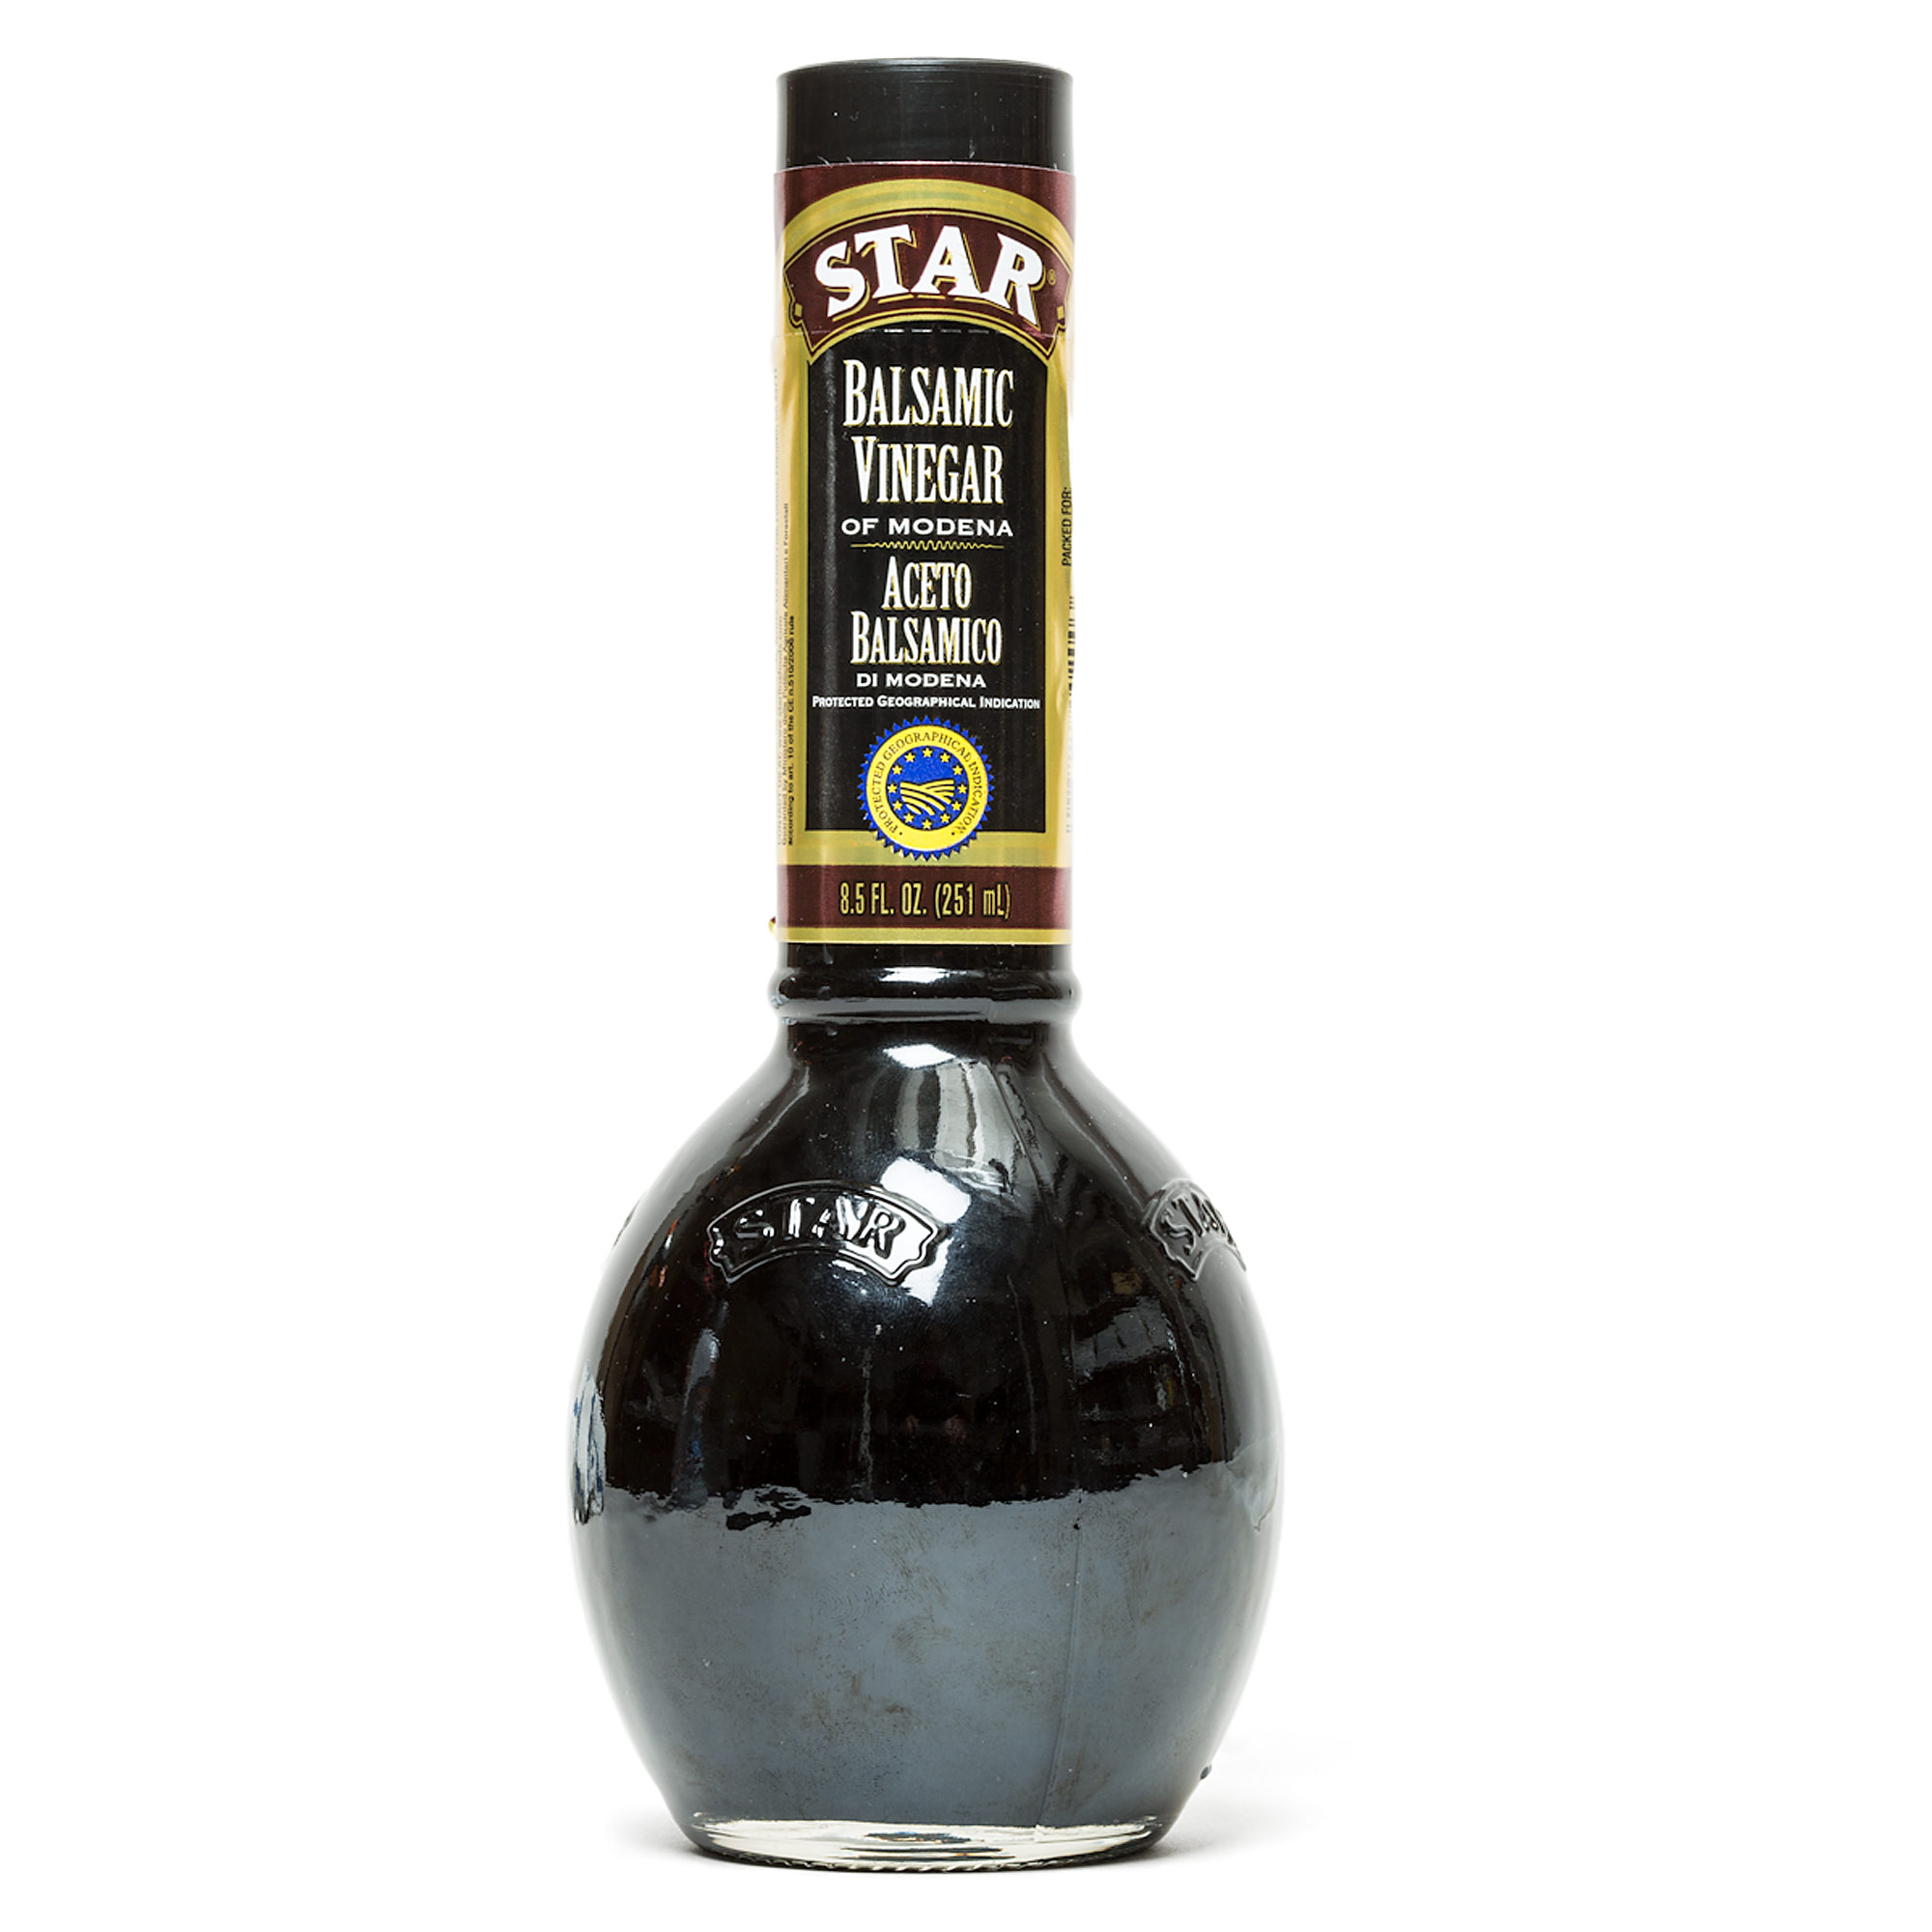 Terra creta Balsamic Vinegar Review